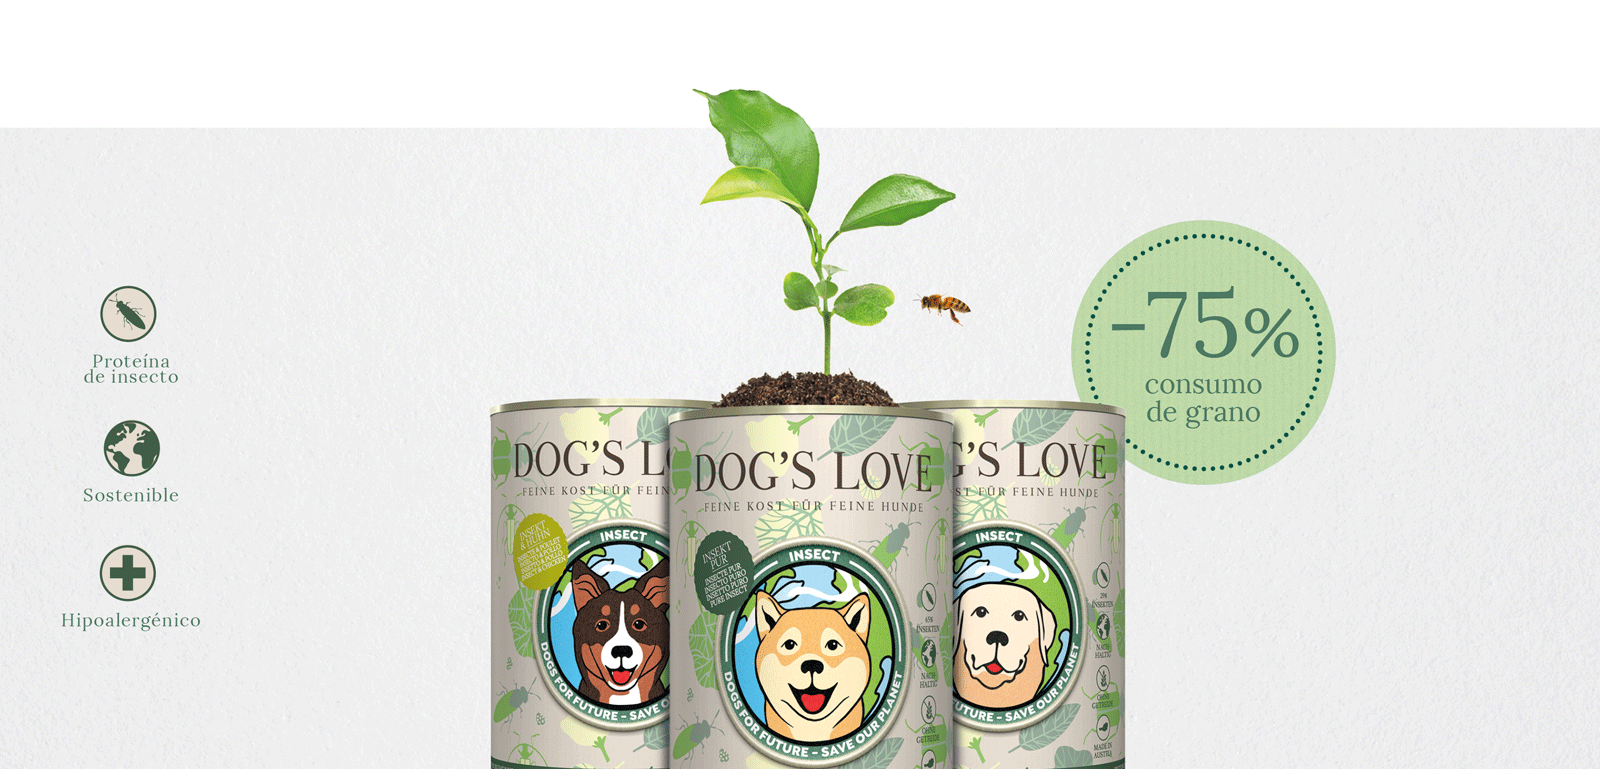 Banner con las 3 variedades de DOG'S LOVE Insect, con la siguiente información: Proteína de Insecto, Sostenible e Hipoalergénico y la información -75% menos de agua.